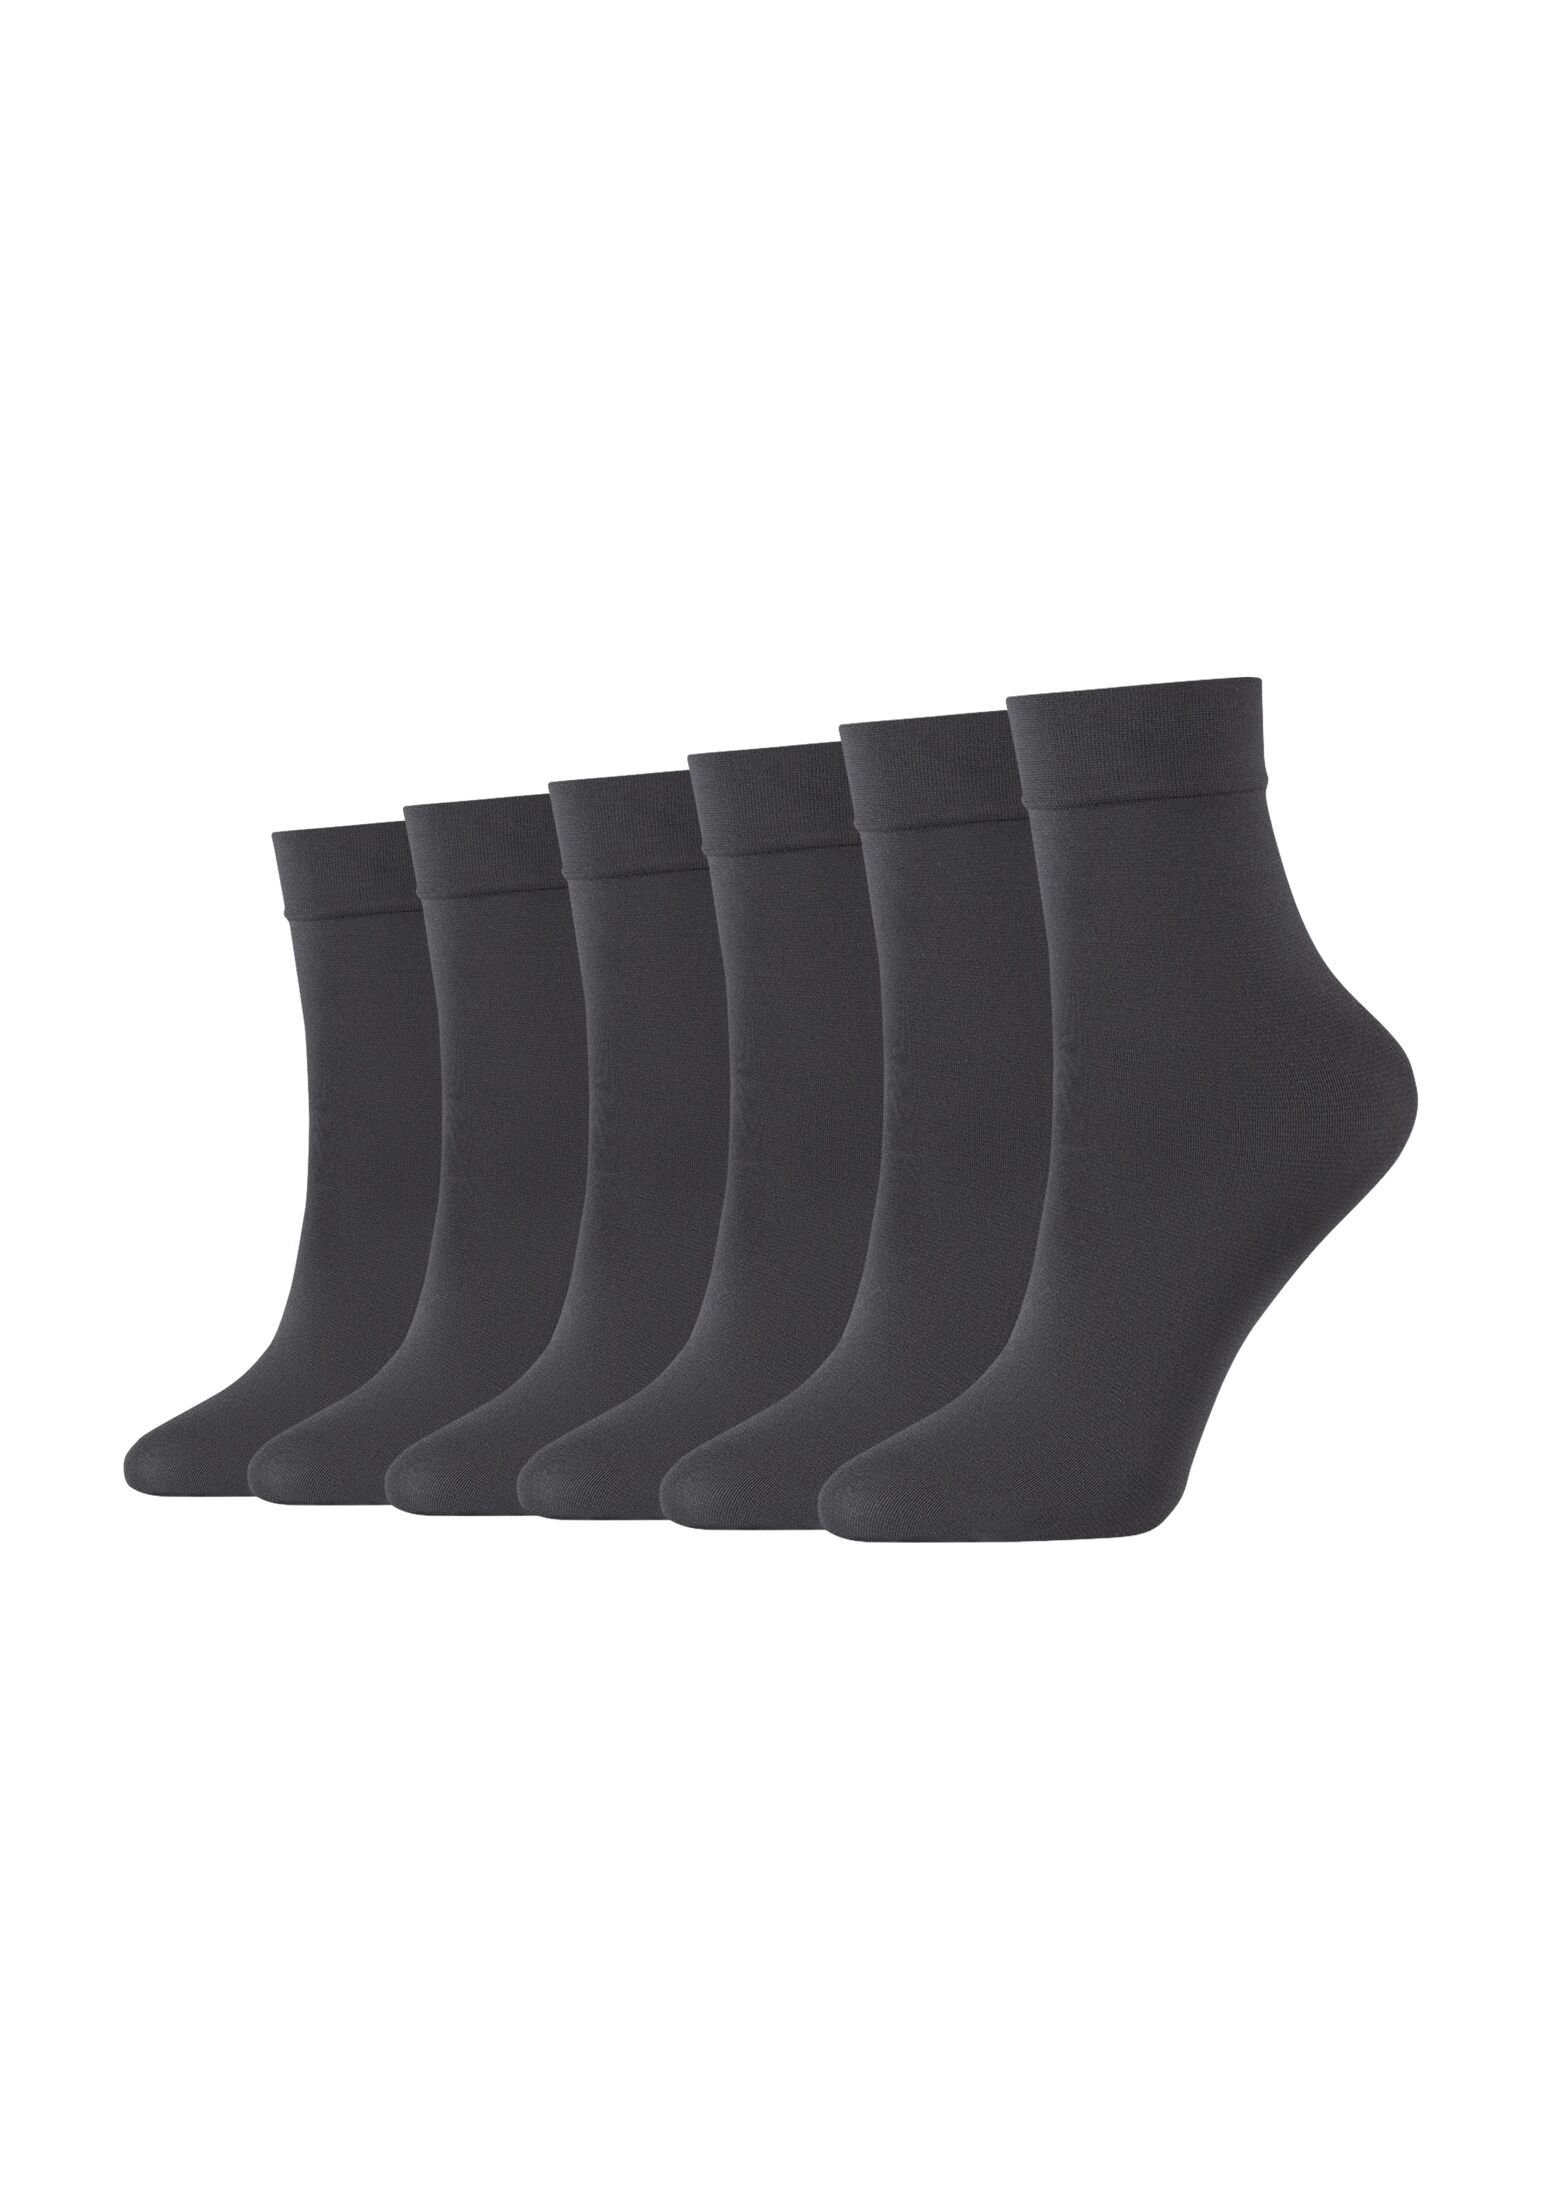 Optik 6er eine Gefühl zweite Socken ein Natürliche, für Haut matte Pack, Socken Camano wie